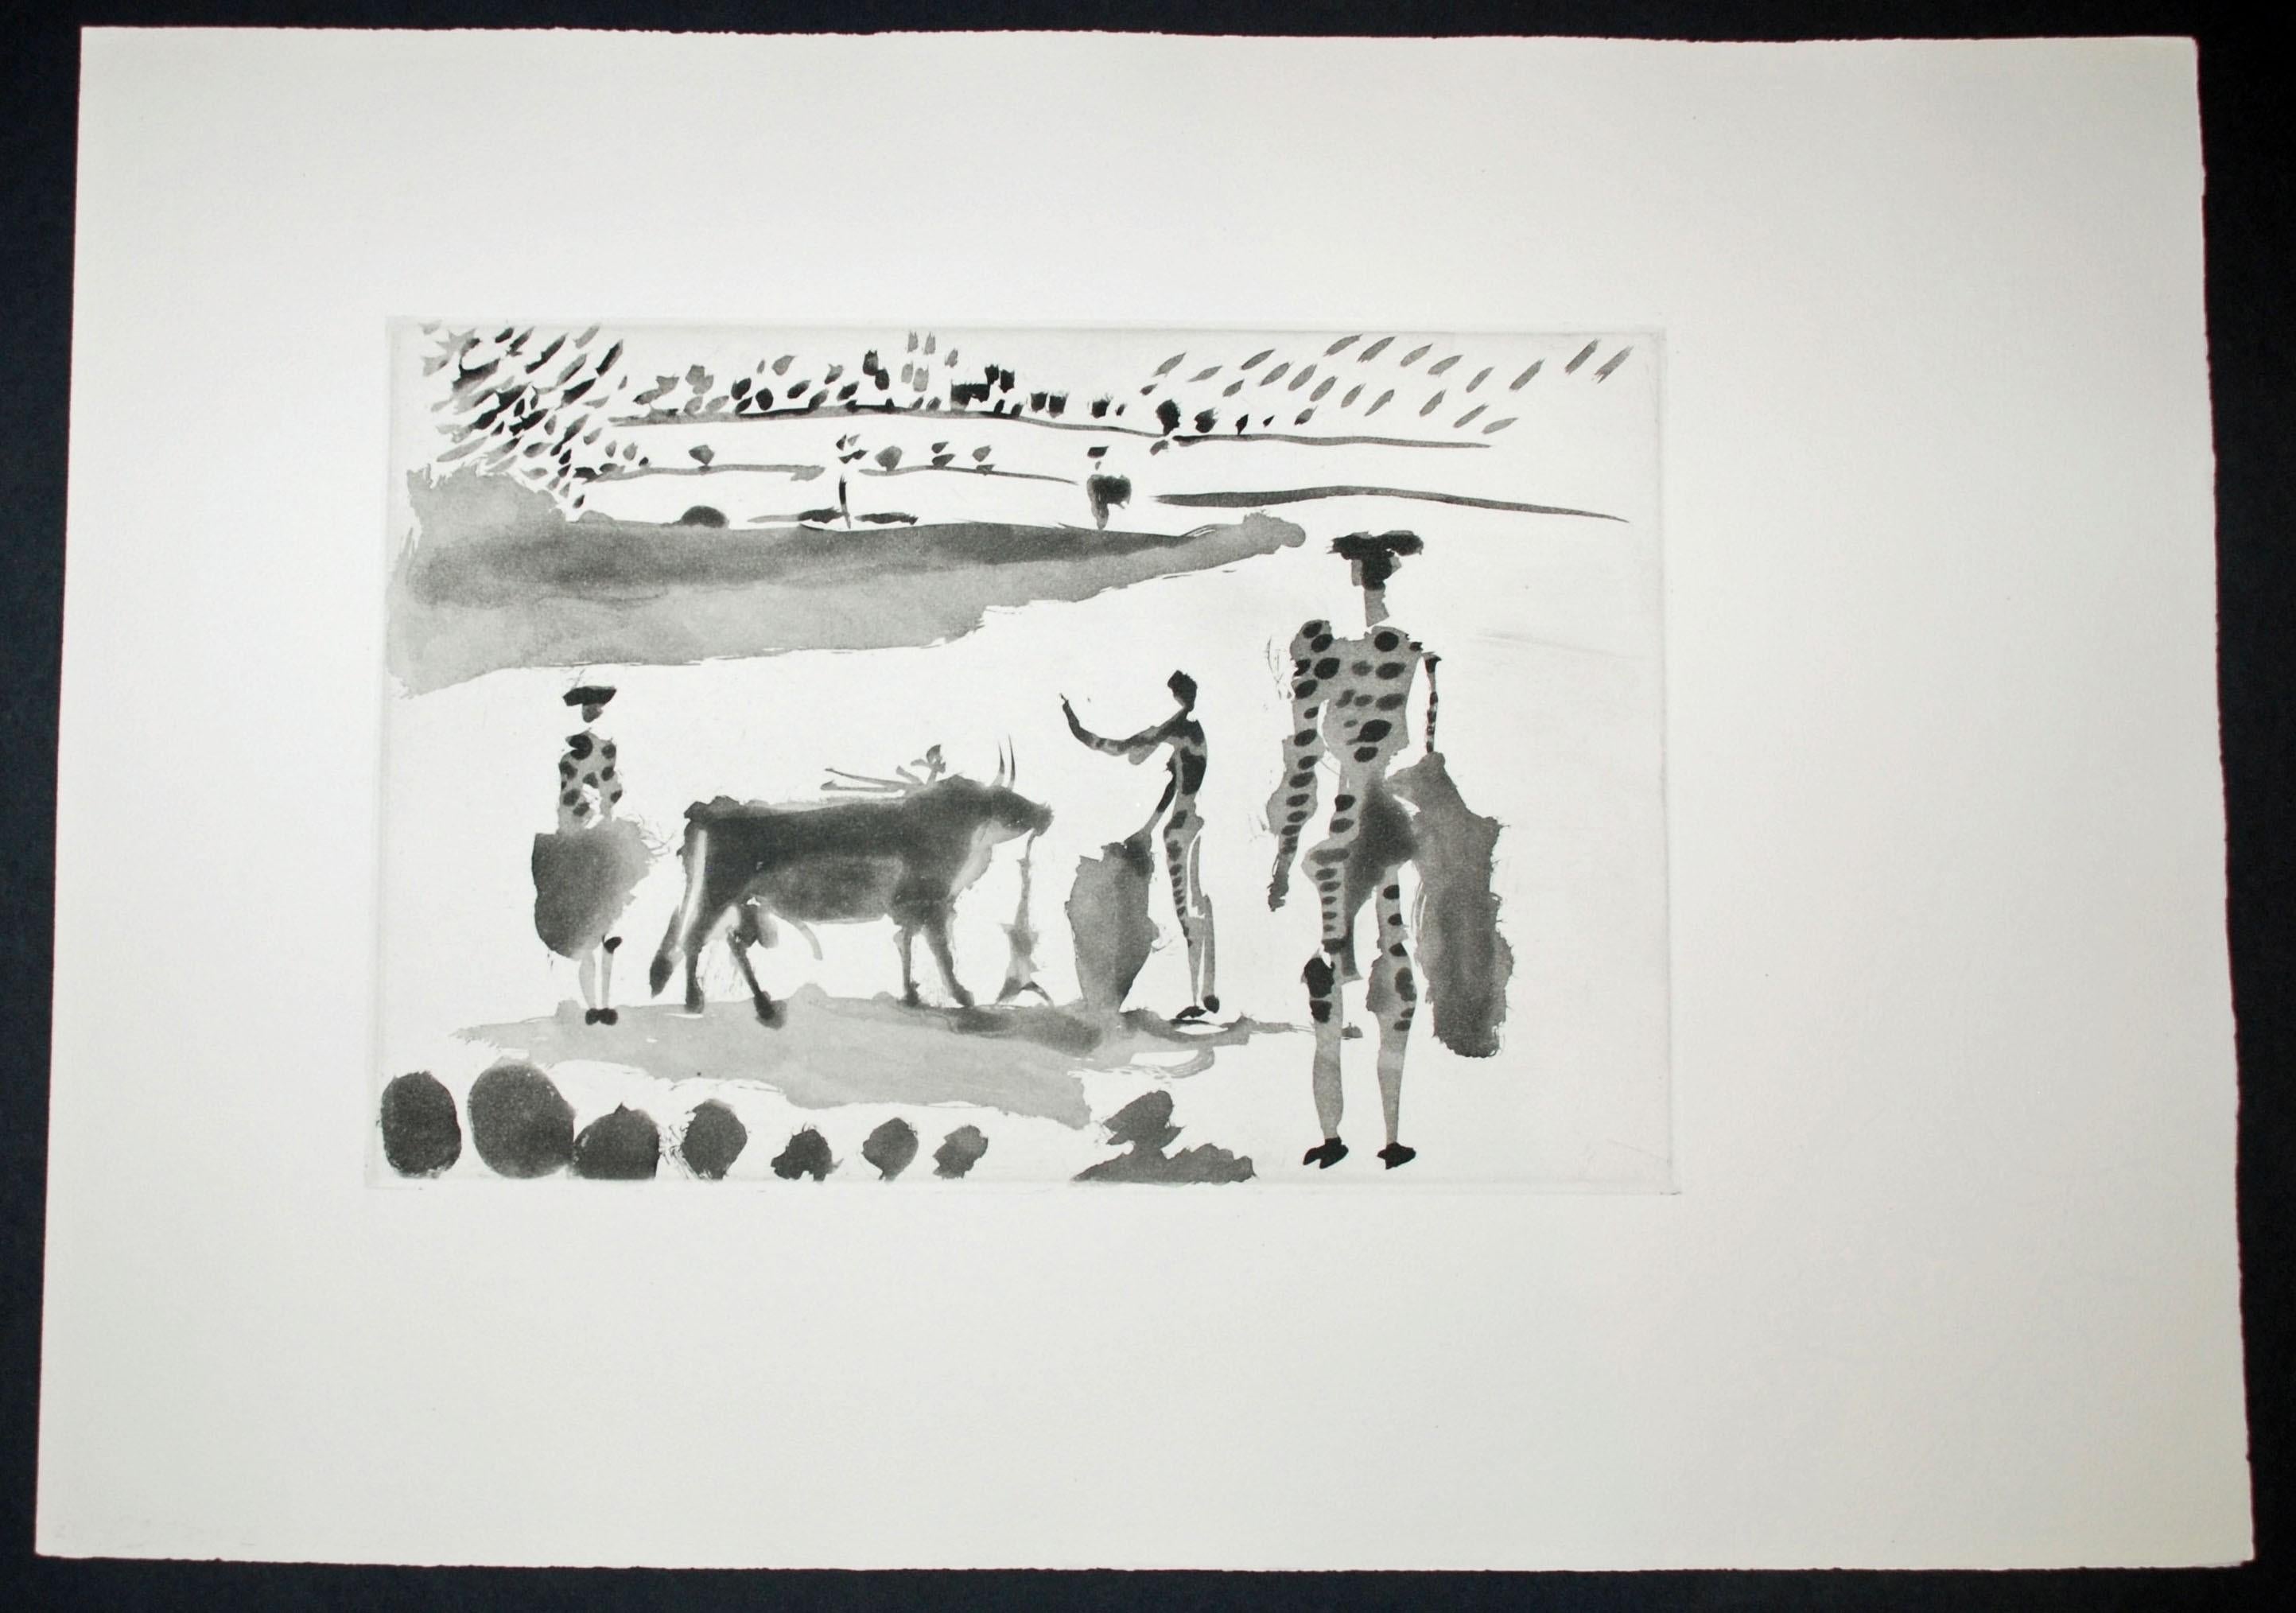 Despues de la Estocada el Torero Senala la Muerte del Toro - Print de Pablo Picasso